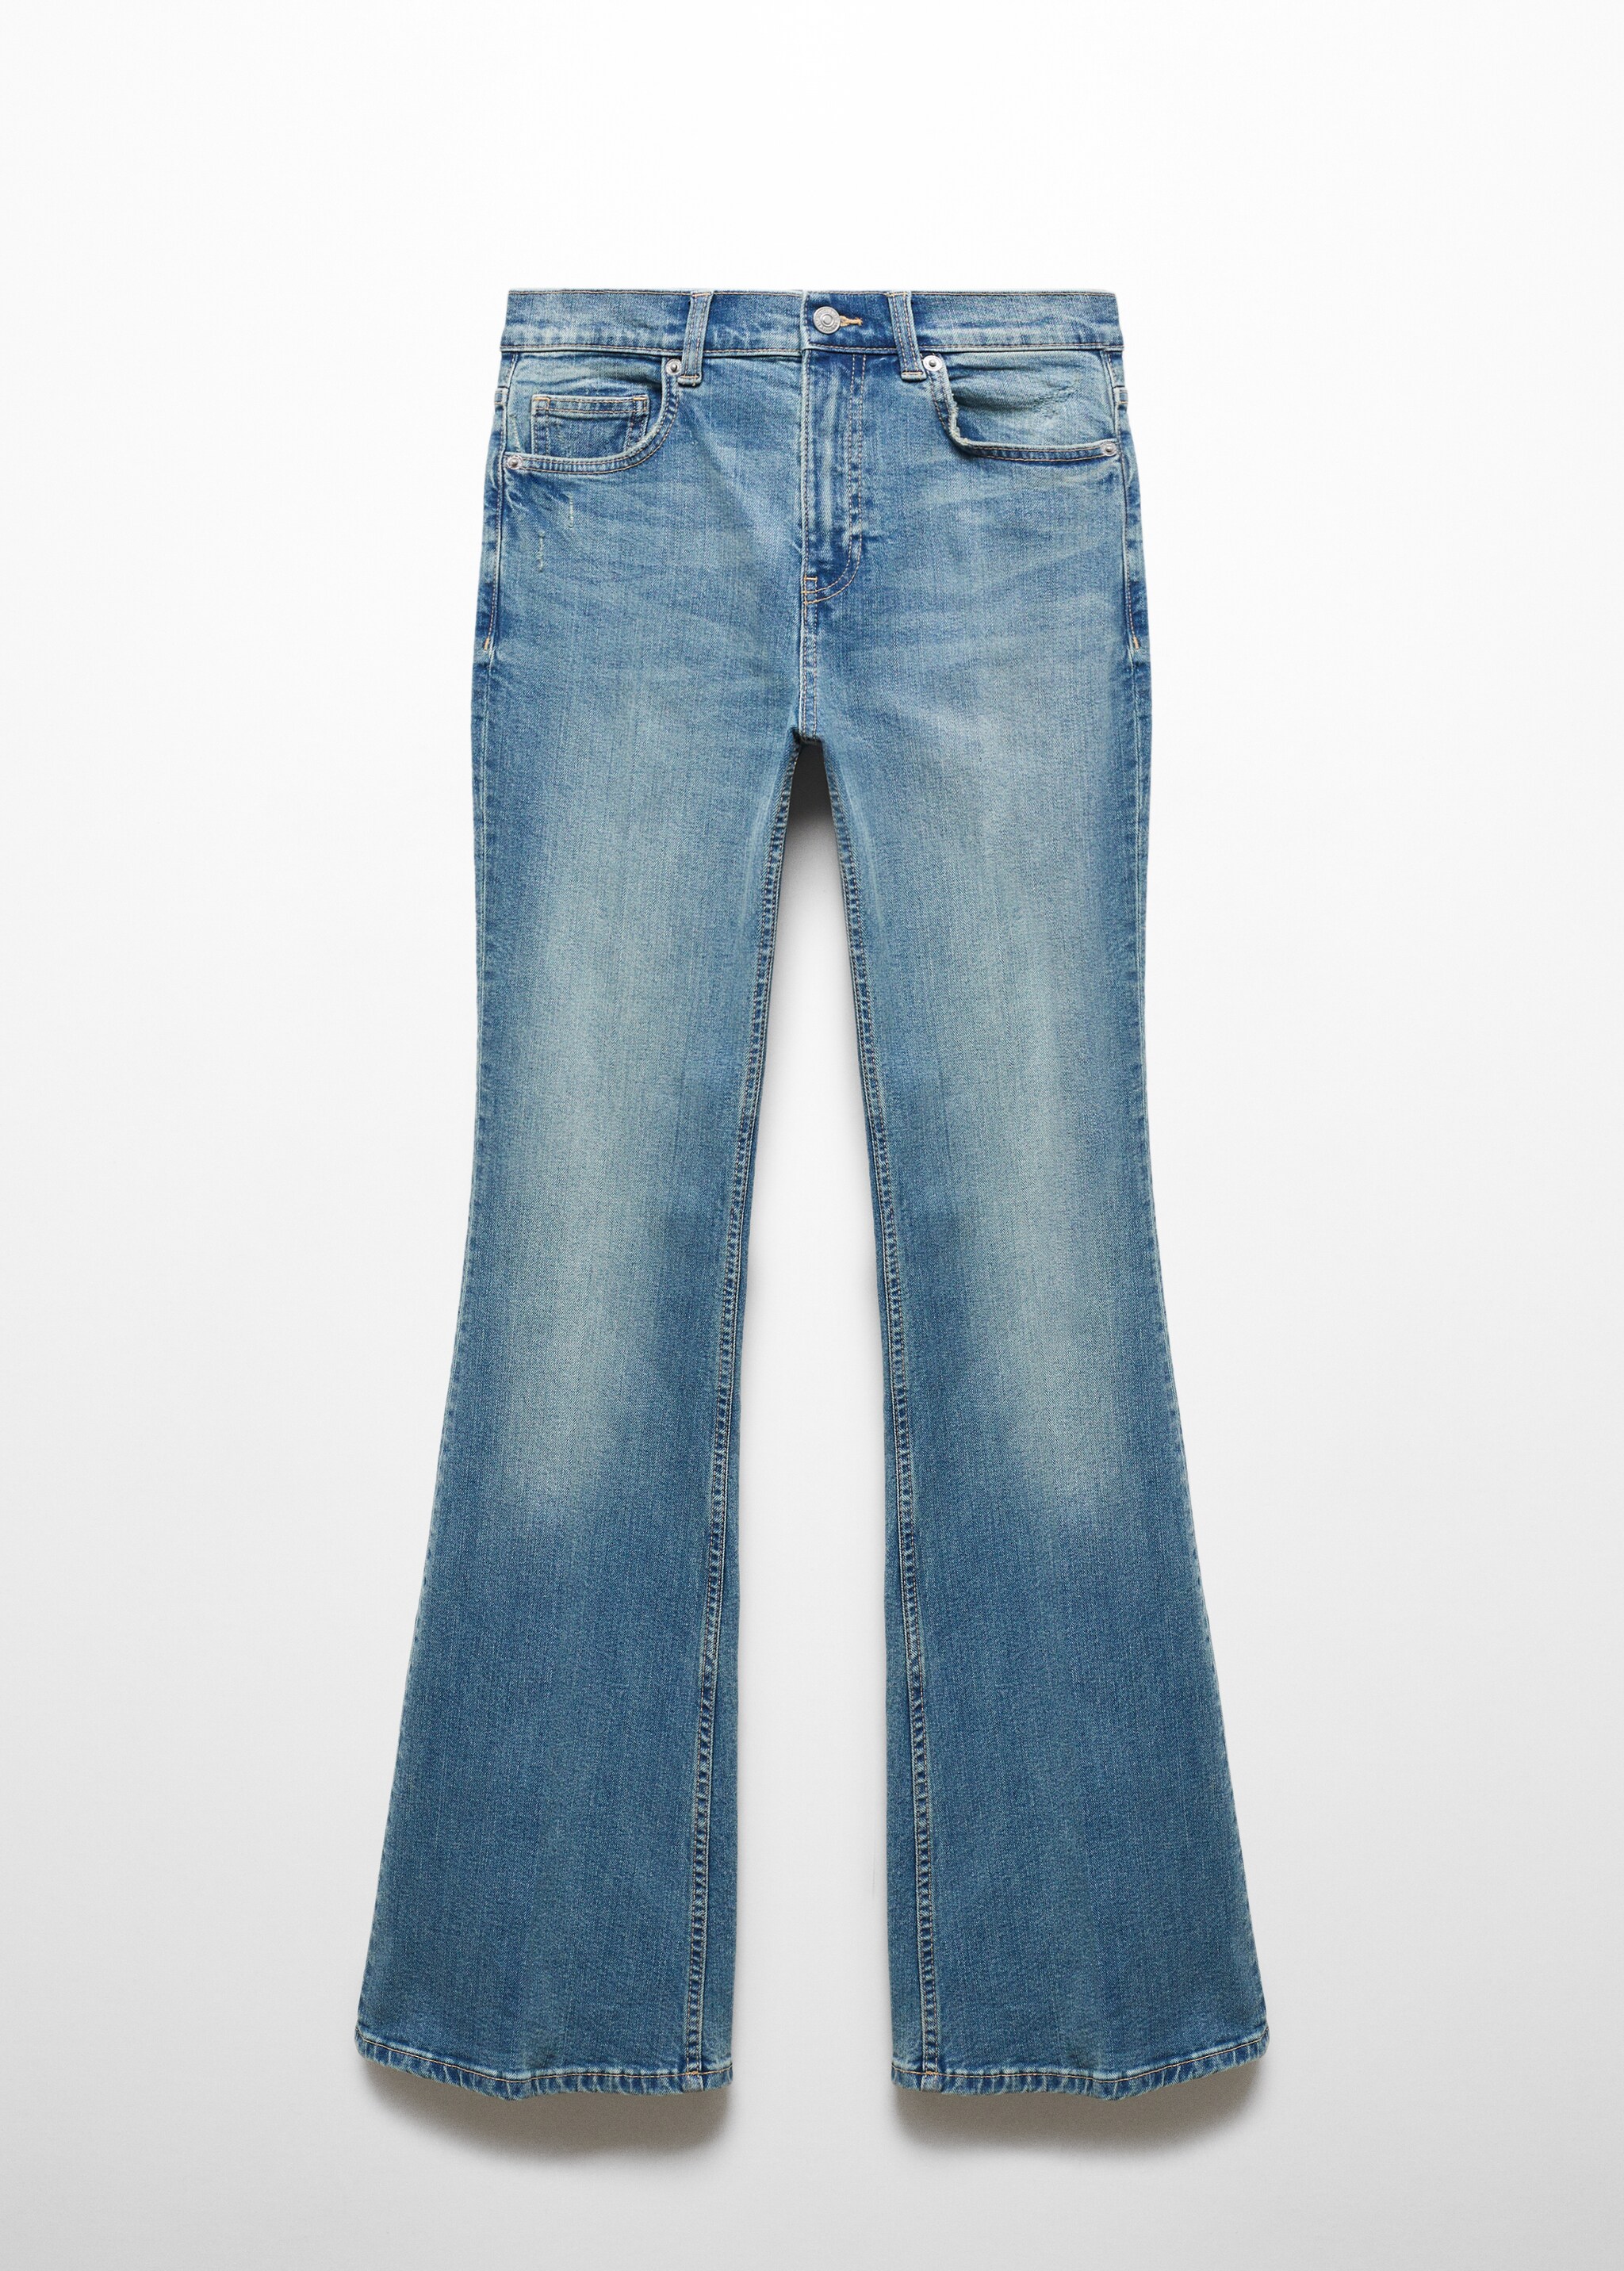 Jeans à boca de sino com cintura alta - Artigo sem modelo